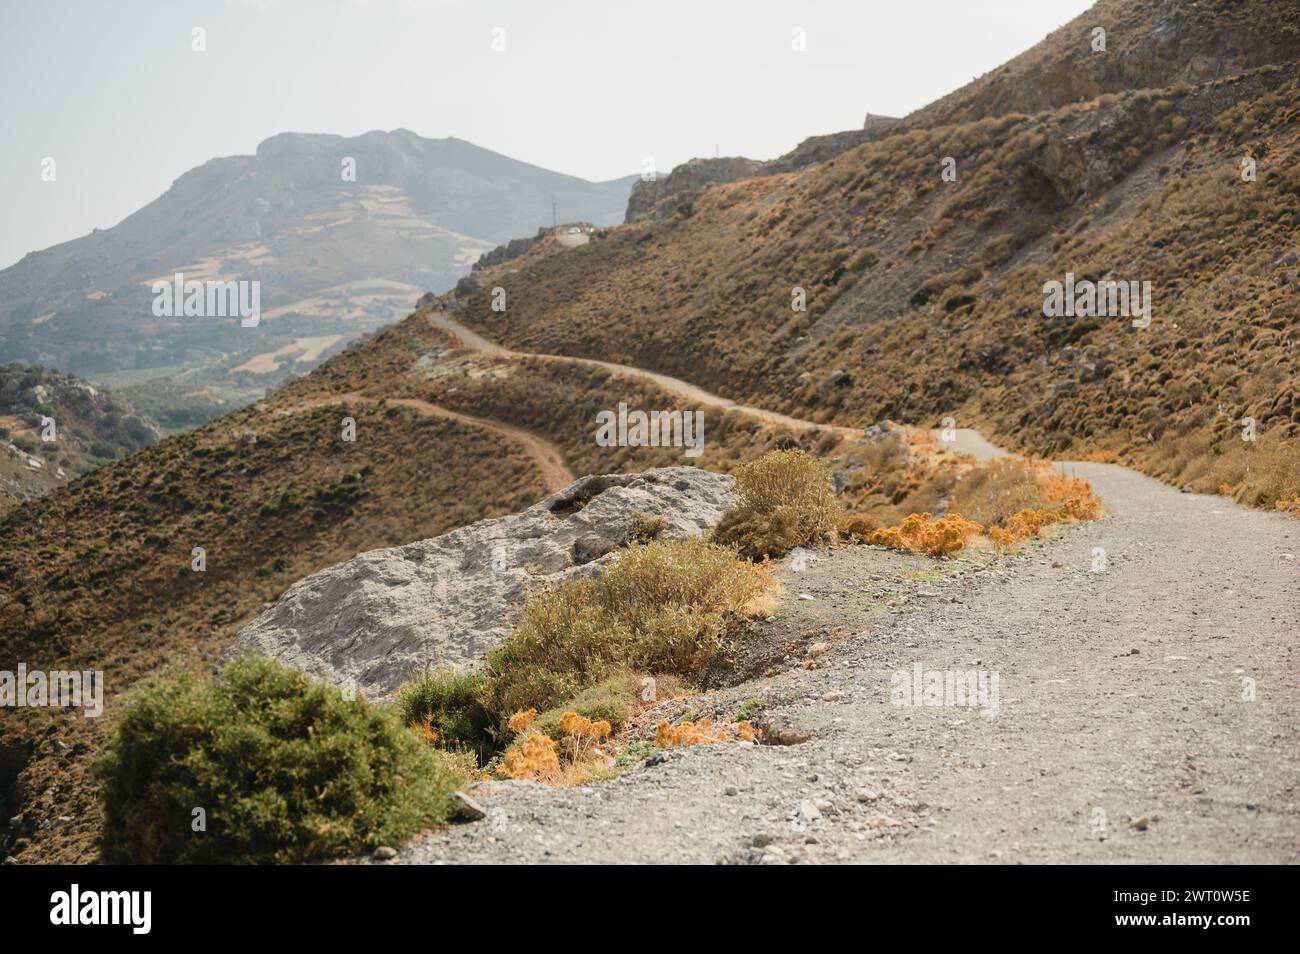 Mountain hiking trails on the island of Crete near Kourtaliotiko Gorge Stock Photo